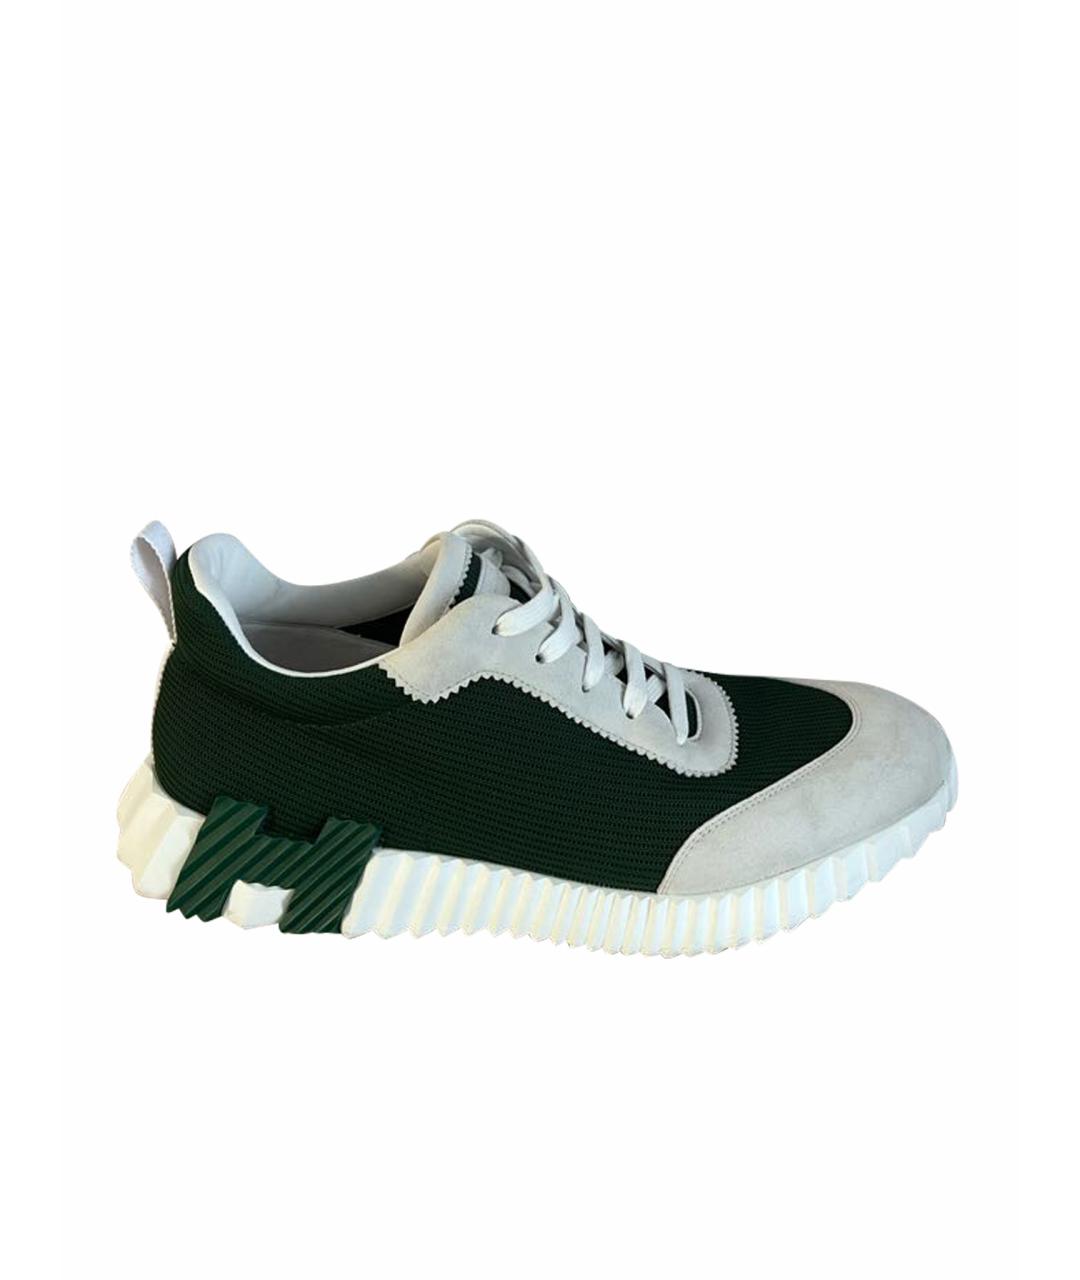 HERMES PRE-OWNED Зеленые низкие кроссовки / кеды, фото 1